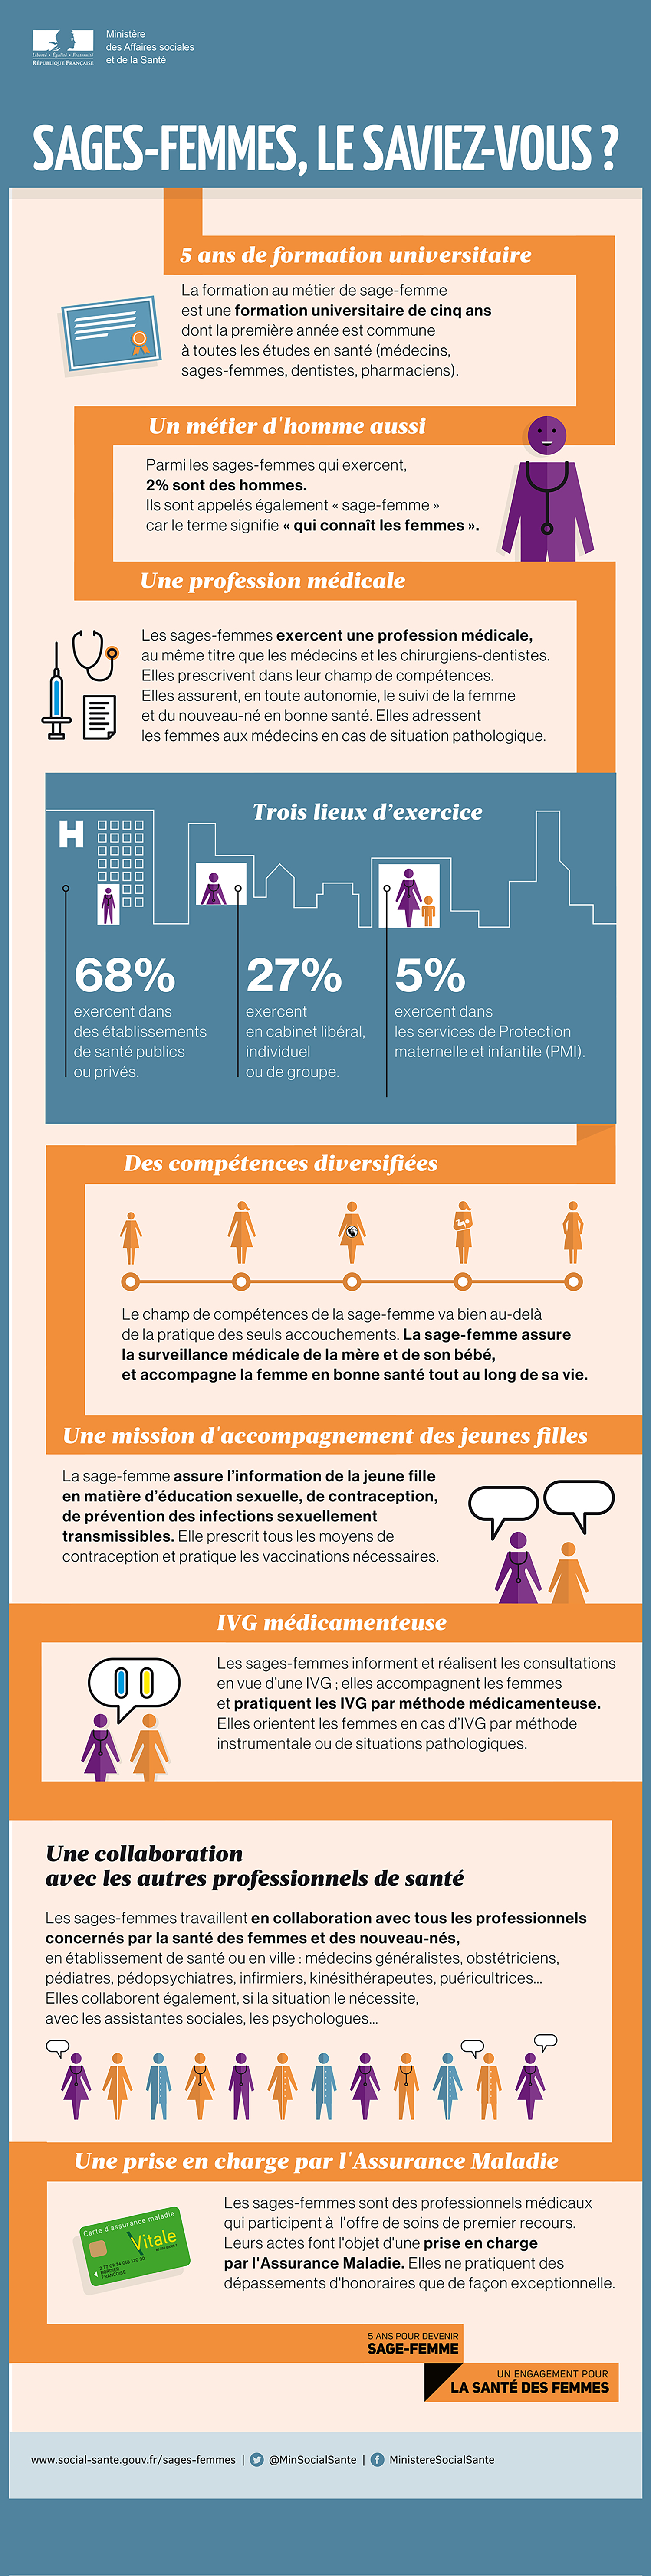 Infographie du Ministère de la santé sur le métier de sage-femme - Juillet 2016